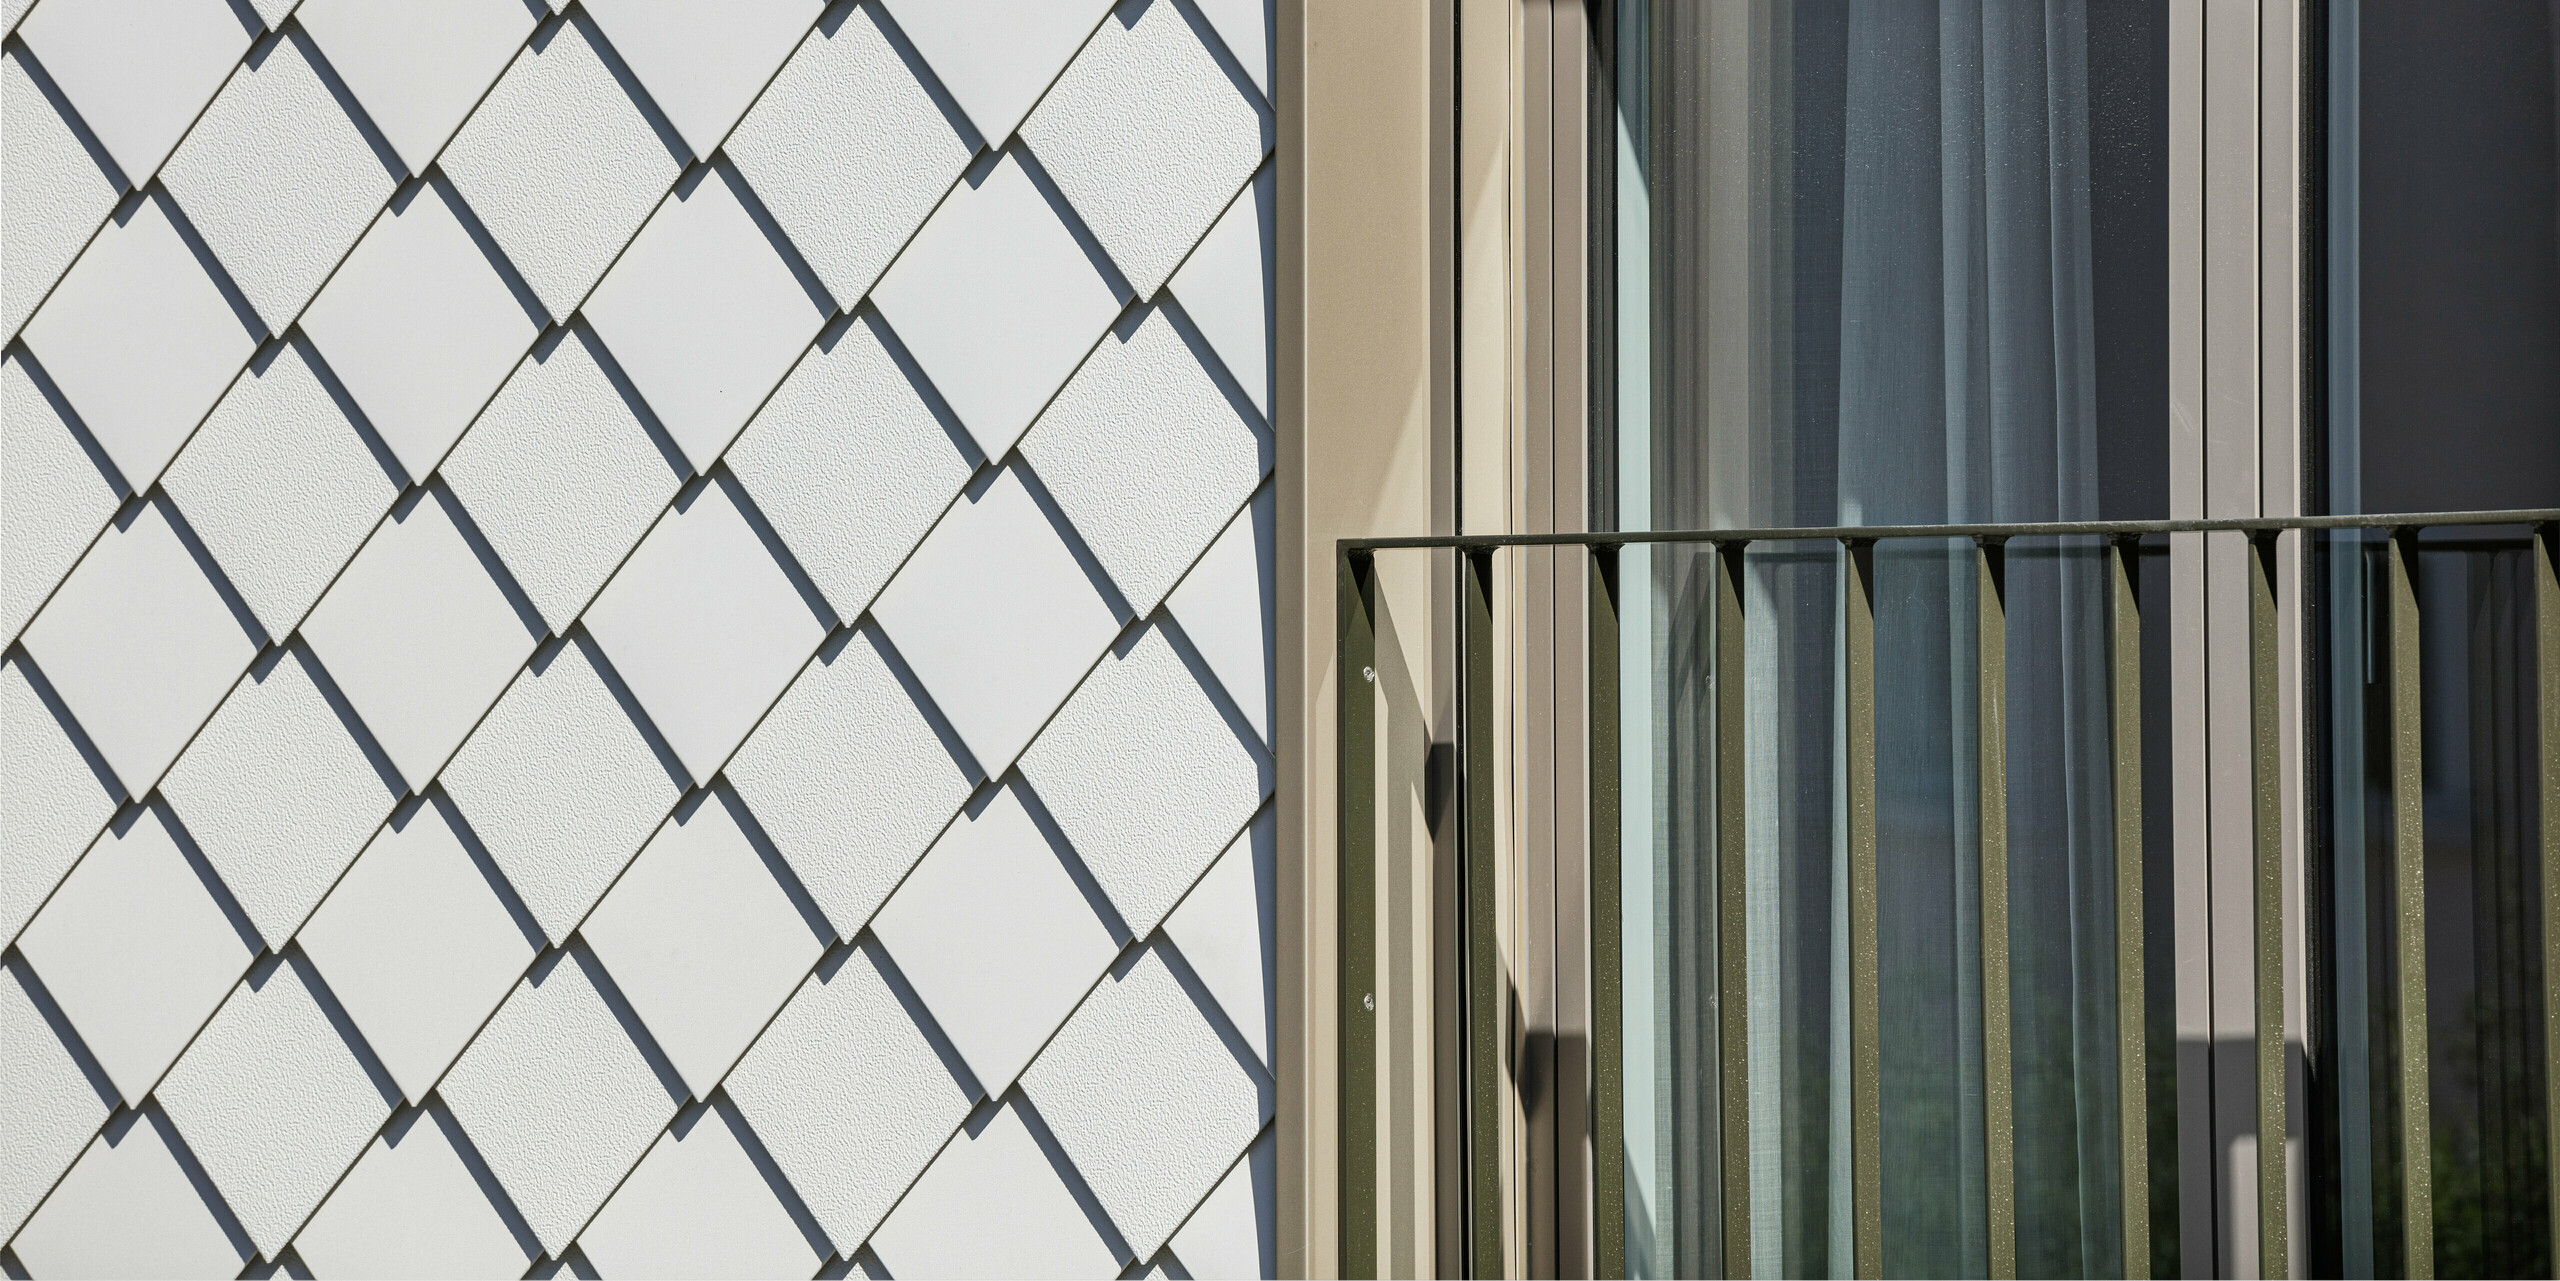 Kontrastreiche Detailaufnahme eines Fensters und der Fassade an einem Wohnhaus in Wiesendangen, Schweiz. Die Fassade zeigt die Verbindung von Funktionalität und Design mit PREFA Wandrauten 20x20 in P.10 Prefaweiß, die neben einem Fenster mit französischem Balkon und eleganten, vertikalen Vorhängen für eine klare und moderne Ästhetik sorgen. Die geometrische Präzision der Rauten schafft eine ansprechende Textur und reflektiert die Qualität und Innovationskraft der PREFA Aluminiumprodukte.